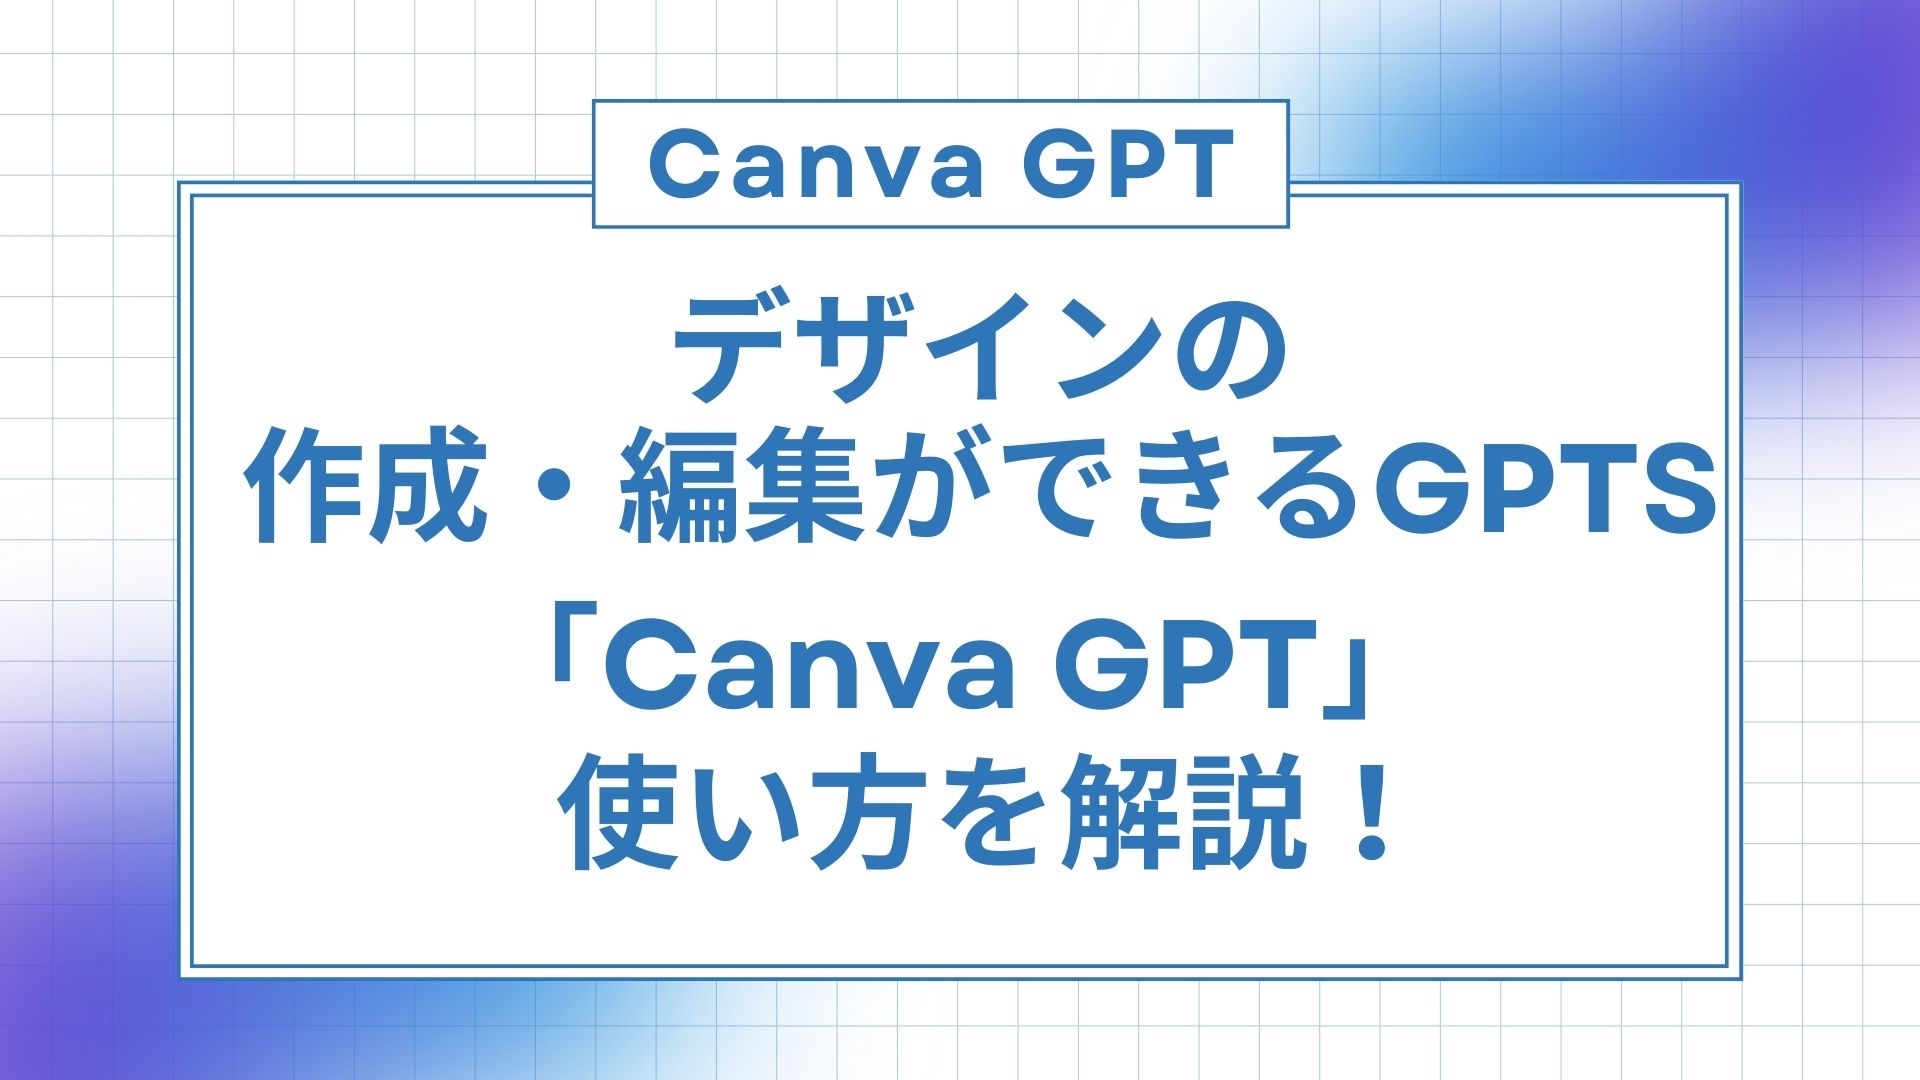 デザイン 作成 編集 GPTs Canva-GPT 使い方 解説